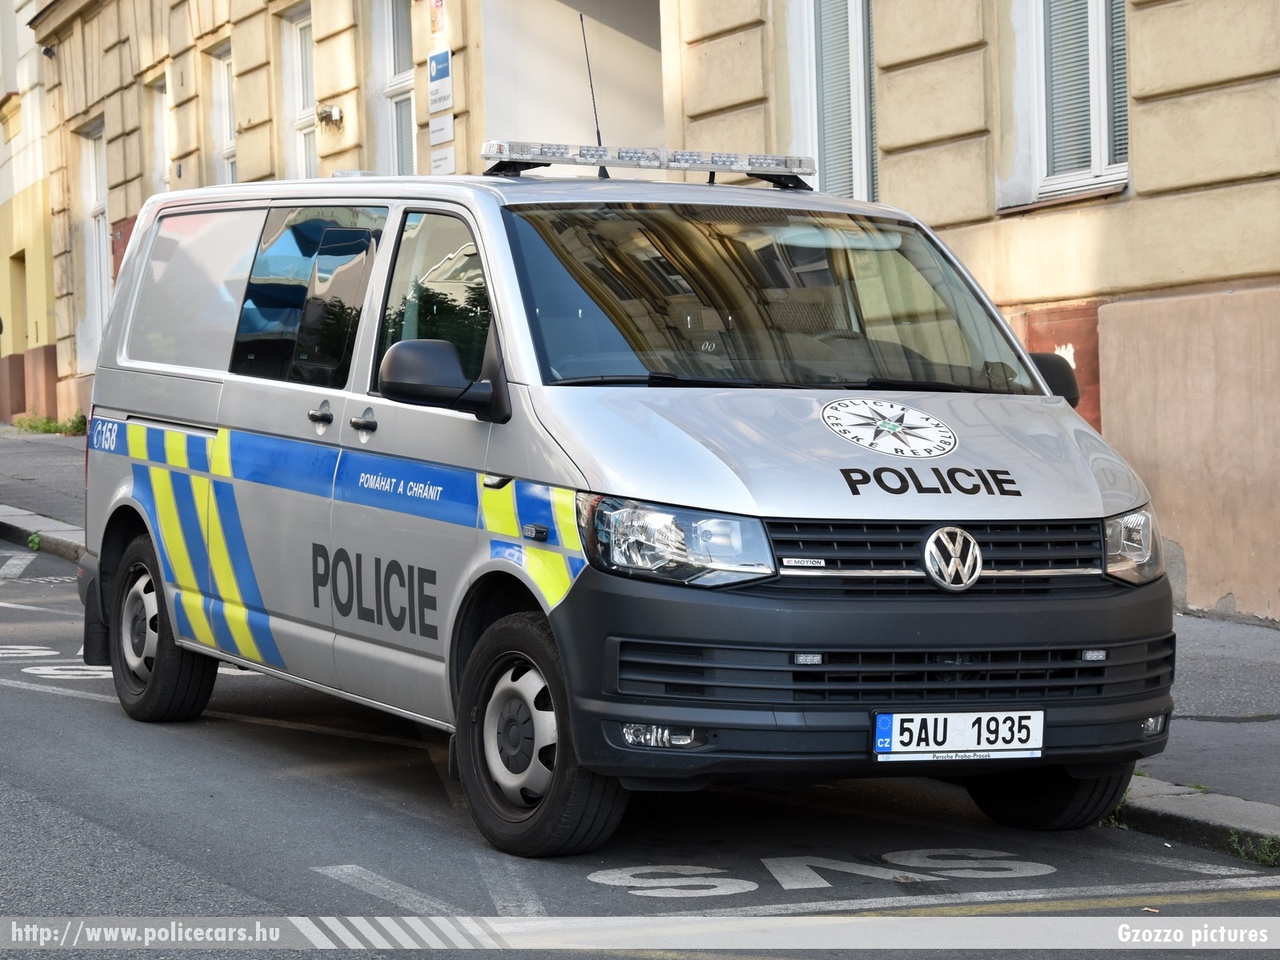 Volkswagen Transporter T6, fotó: Gzozzo pictures
Keywords: cseh Csehország czech police policecar rendőrautó rendőr